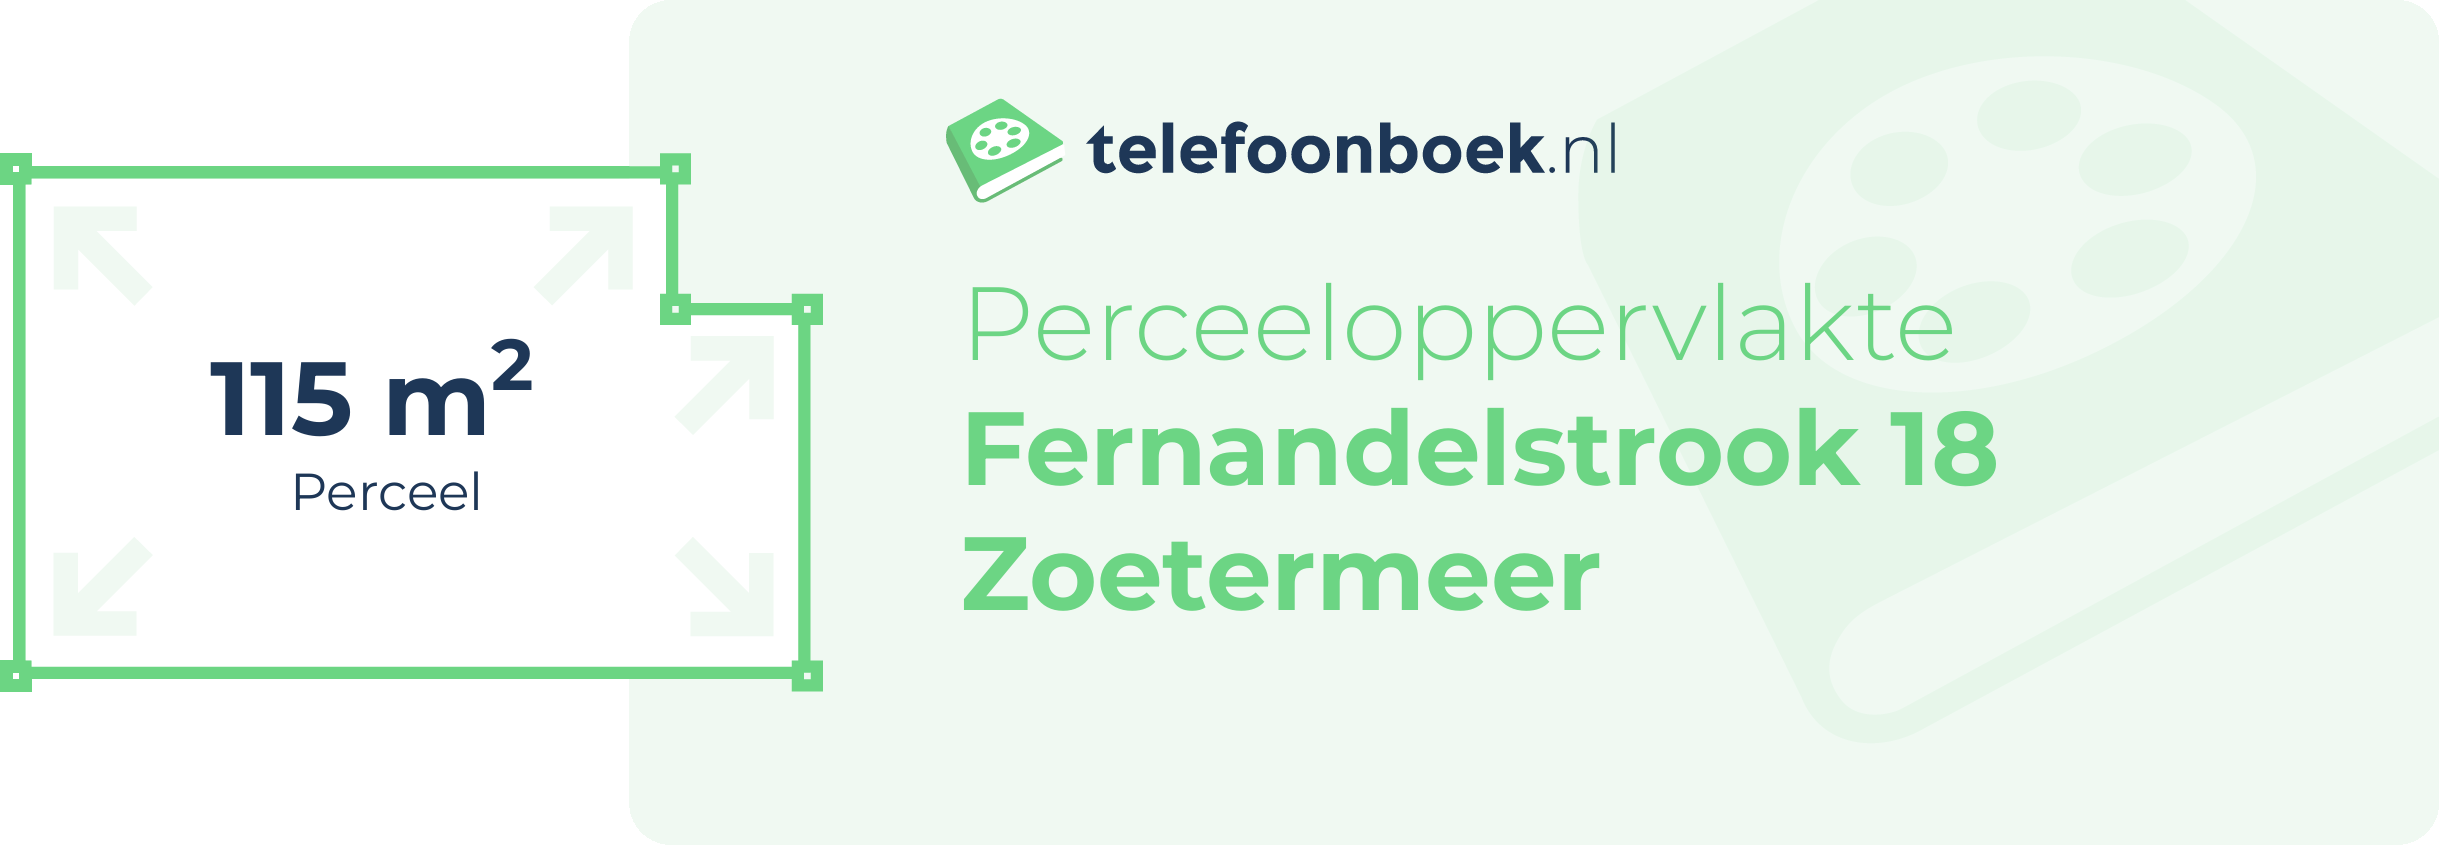 Perceeloppervlakte Fernandelstrook 18 Zoetermeer